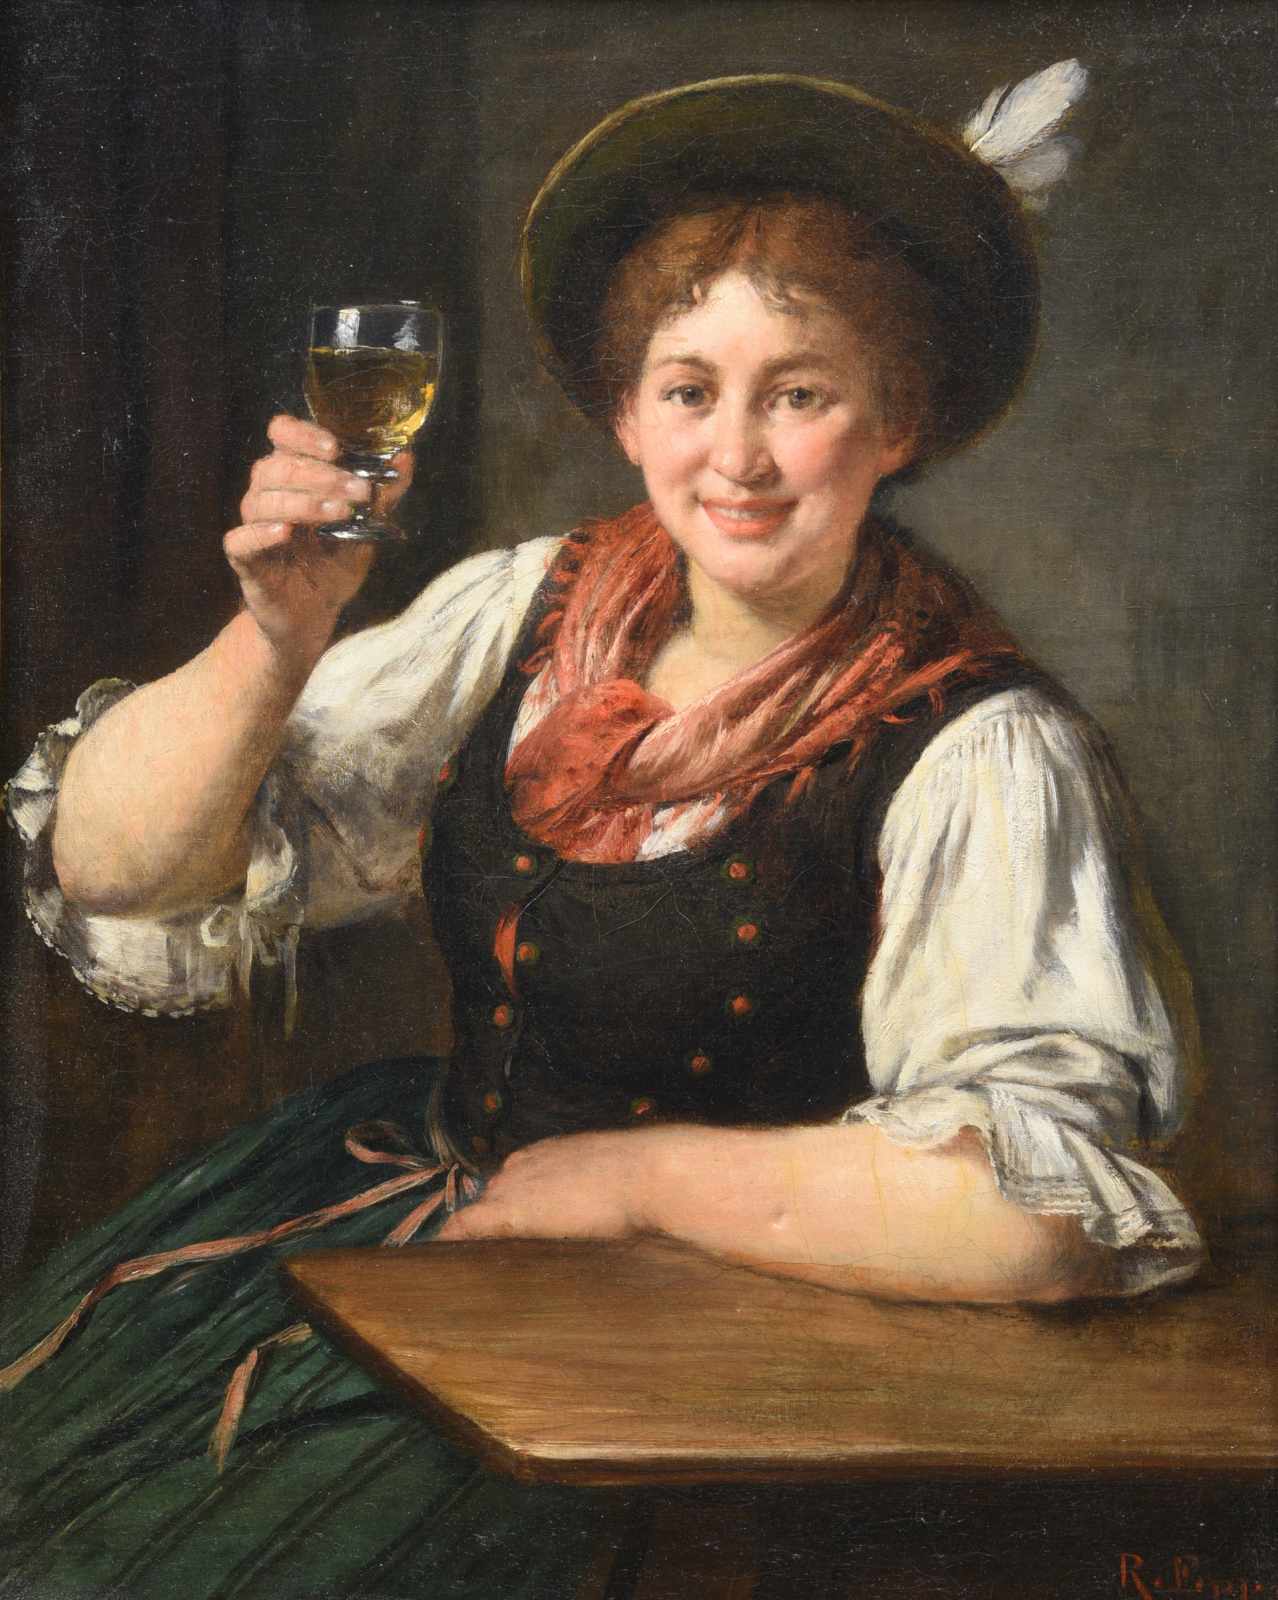 Epp, Rudolf (1834 Eberbach - 1910 München), "Mädchen in Tracht prostet dem Betrachter zu", Öl auf